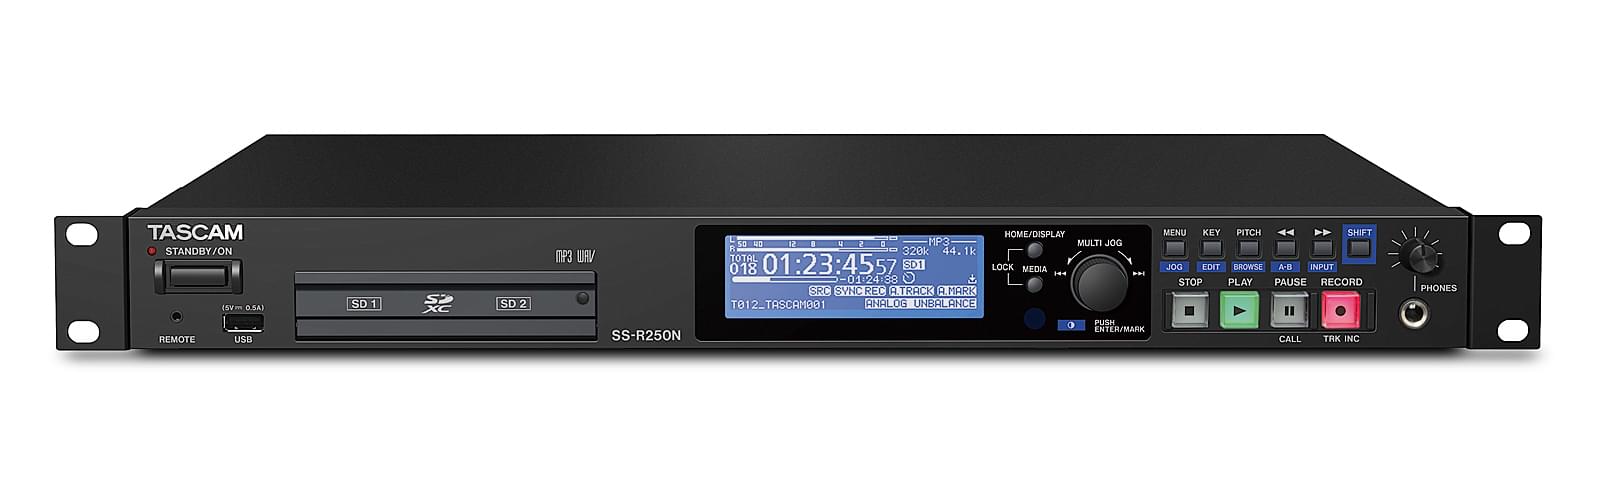 Enregistreur audio réseau sur carte mémoire | Tascam SS-R250N